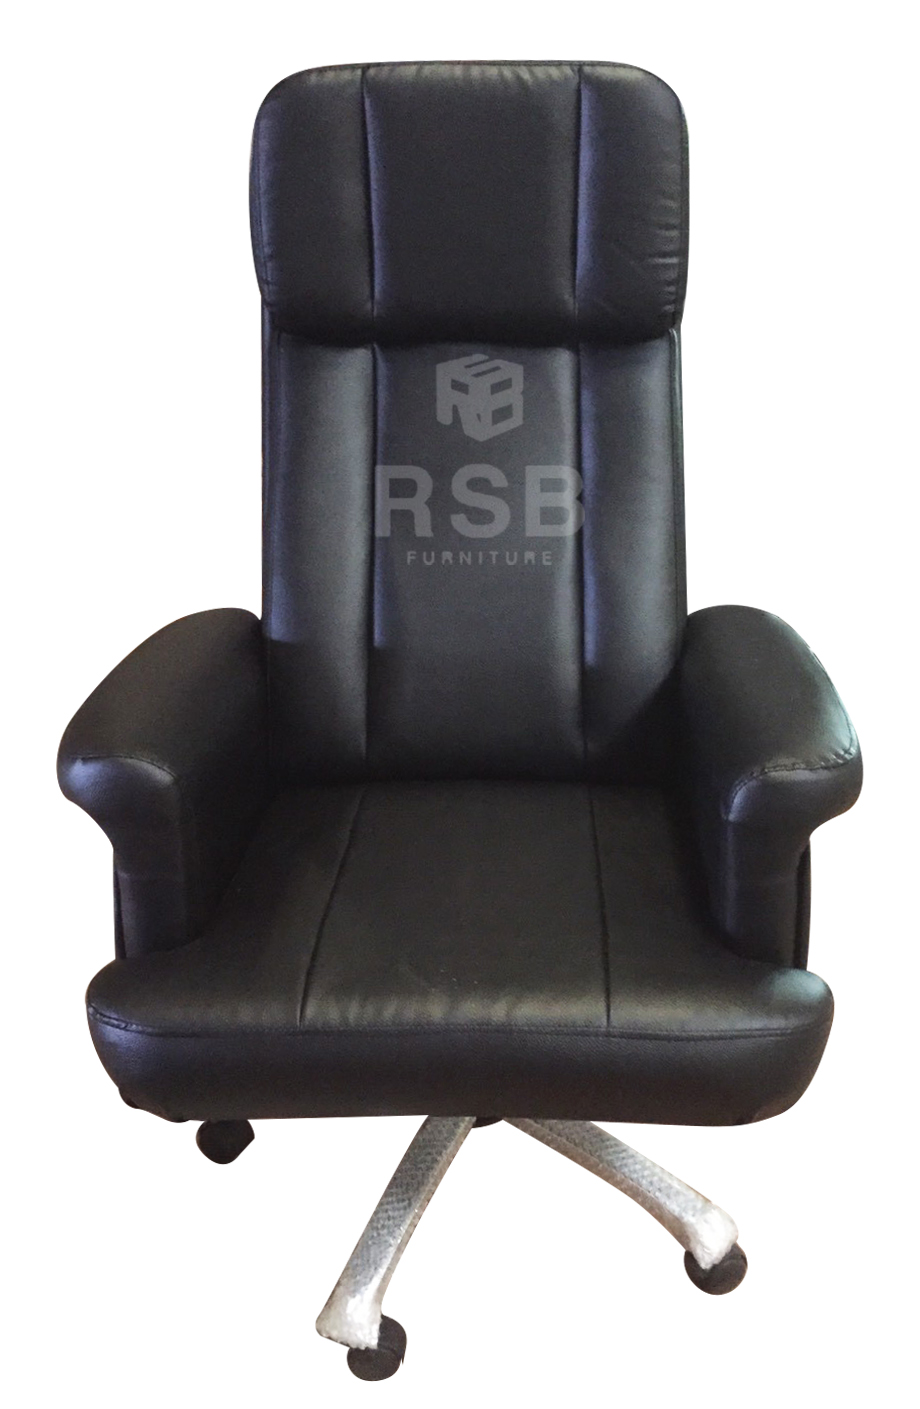 เก้าอี้ผู้บริหาร พนักพิง ที่นั่งหุ้มเบาะหนา ขาเหล็กเงา รับน้ำหนัก 150 KG รหัส 3185